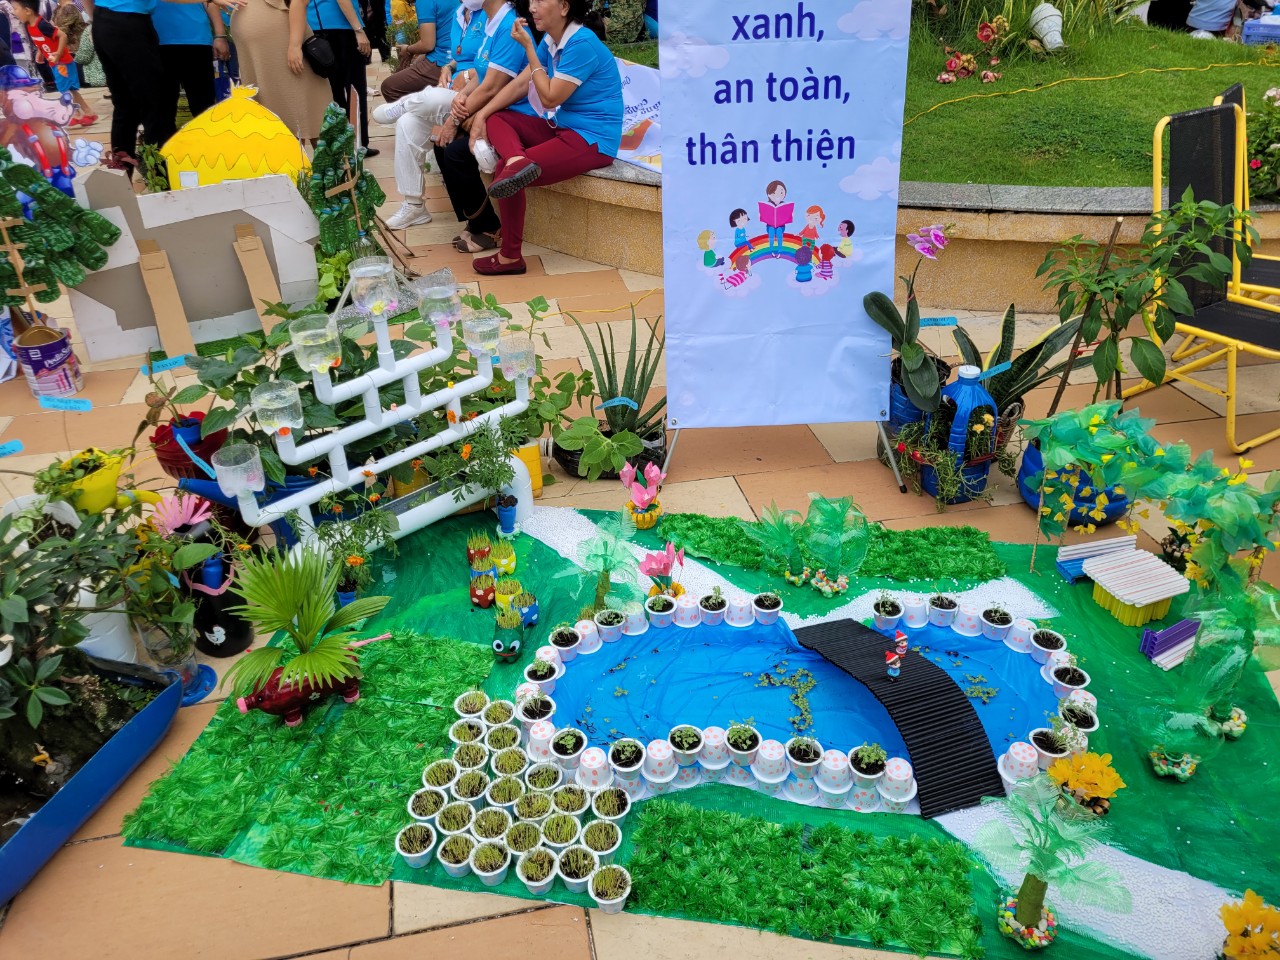 Mô hình trường học xanh, an toàn, thân thiện do Hội LHPN P. Tân Hưng thực hiện từ vật liệu tái chế